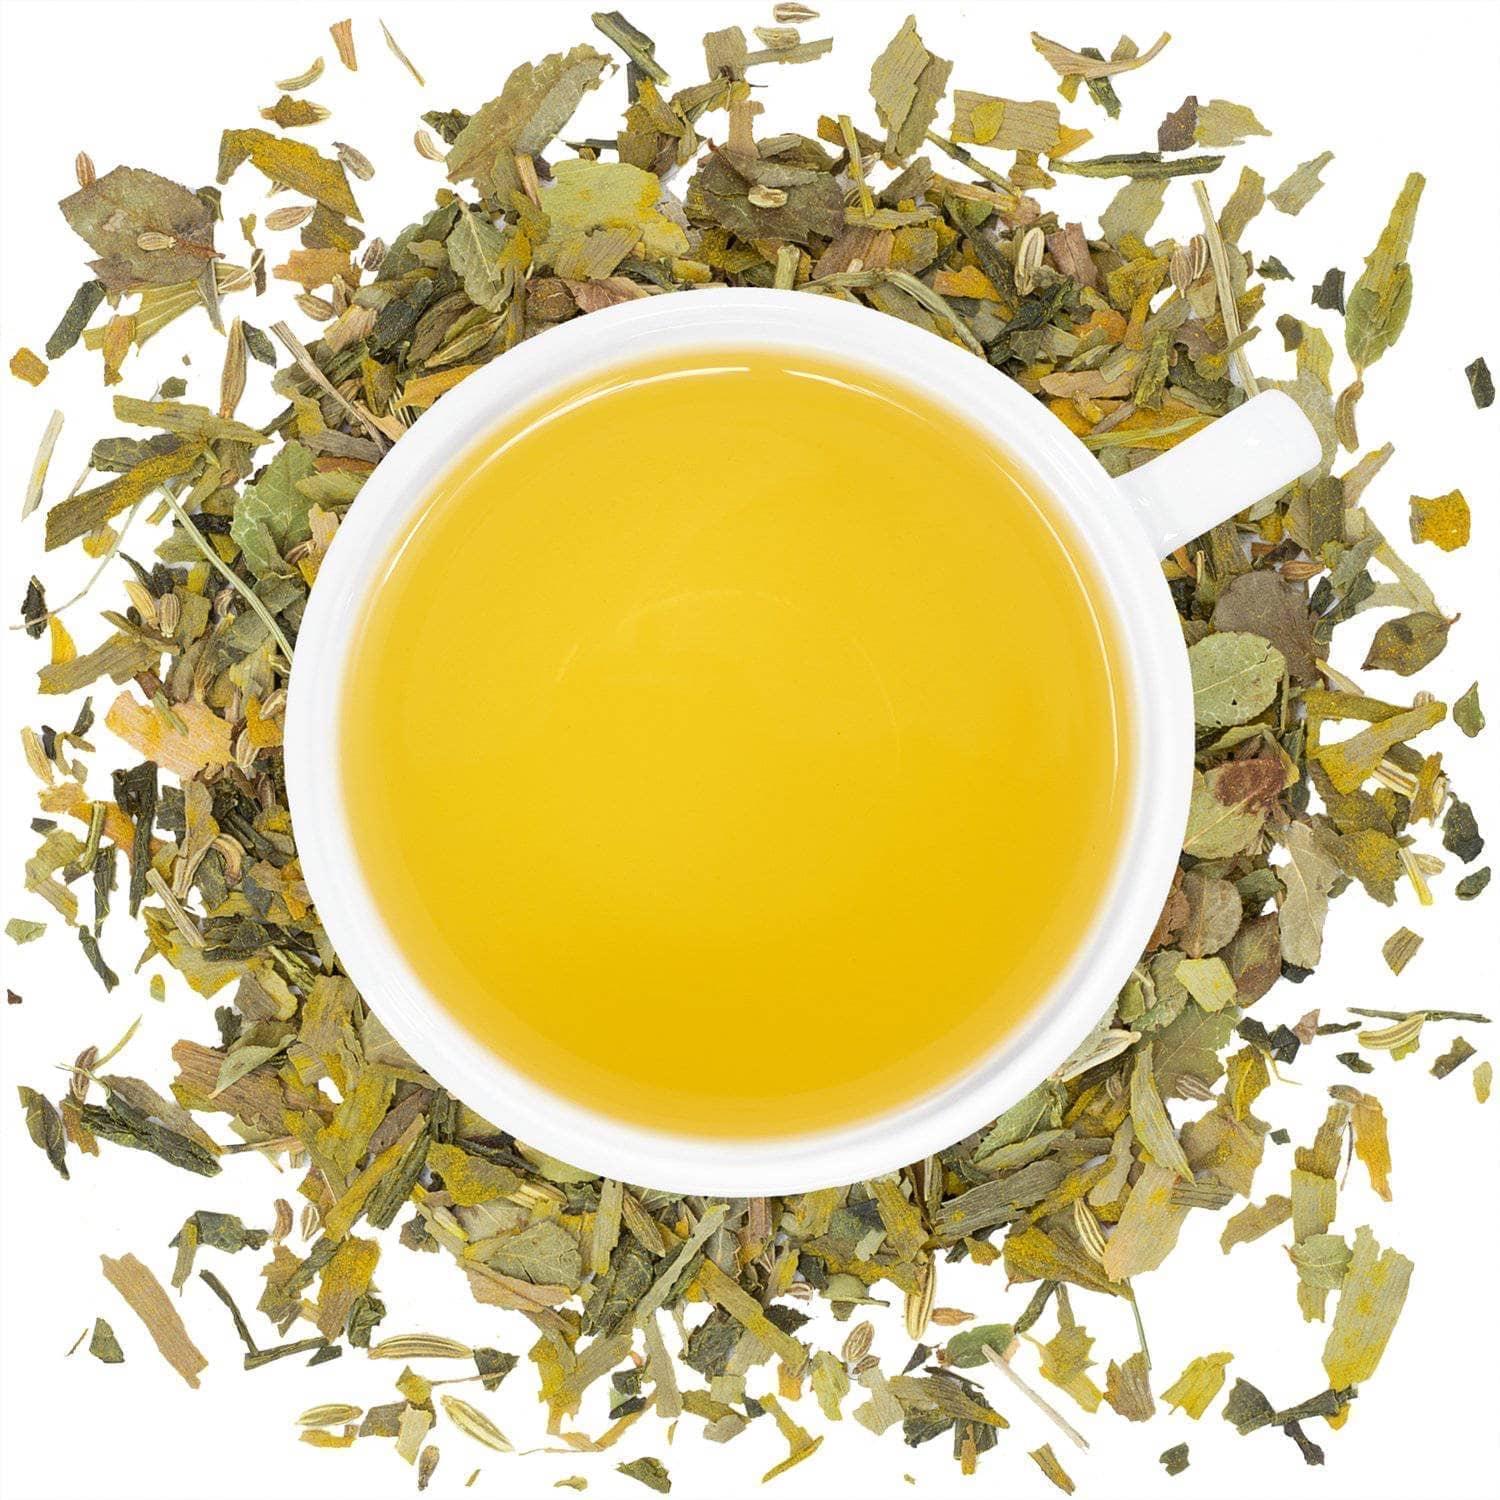 Organic Healthy Vision Tea - Loose Leaf Tea - Full Leaf Tea Company